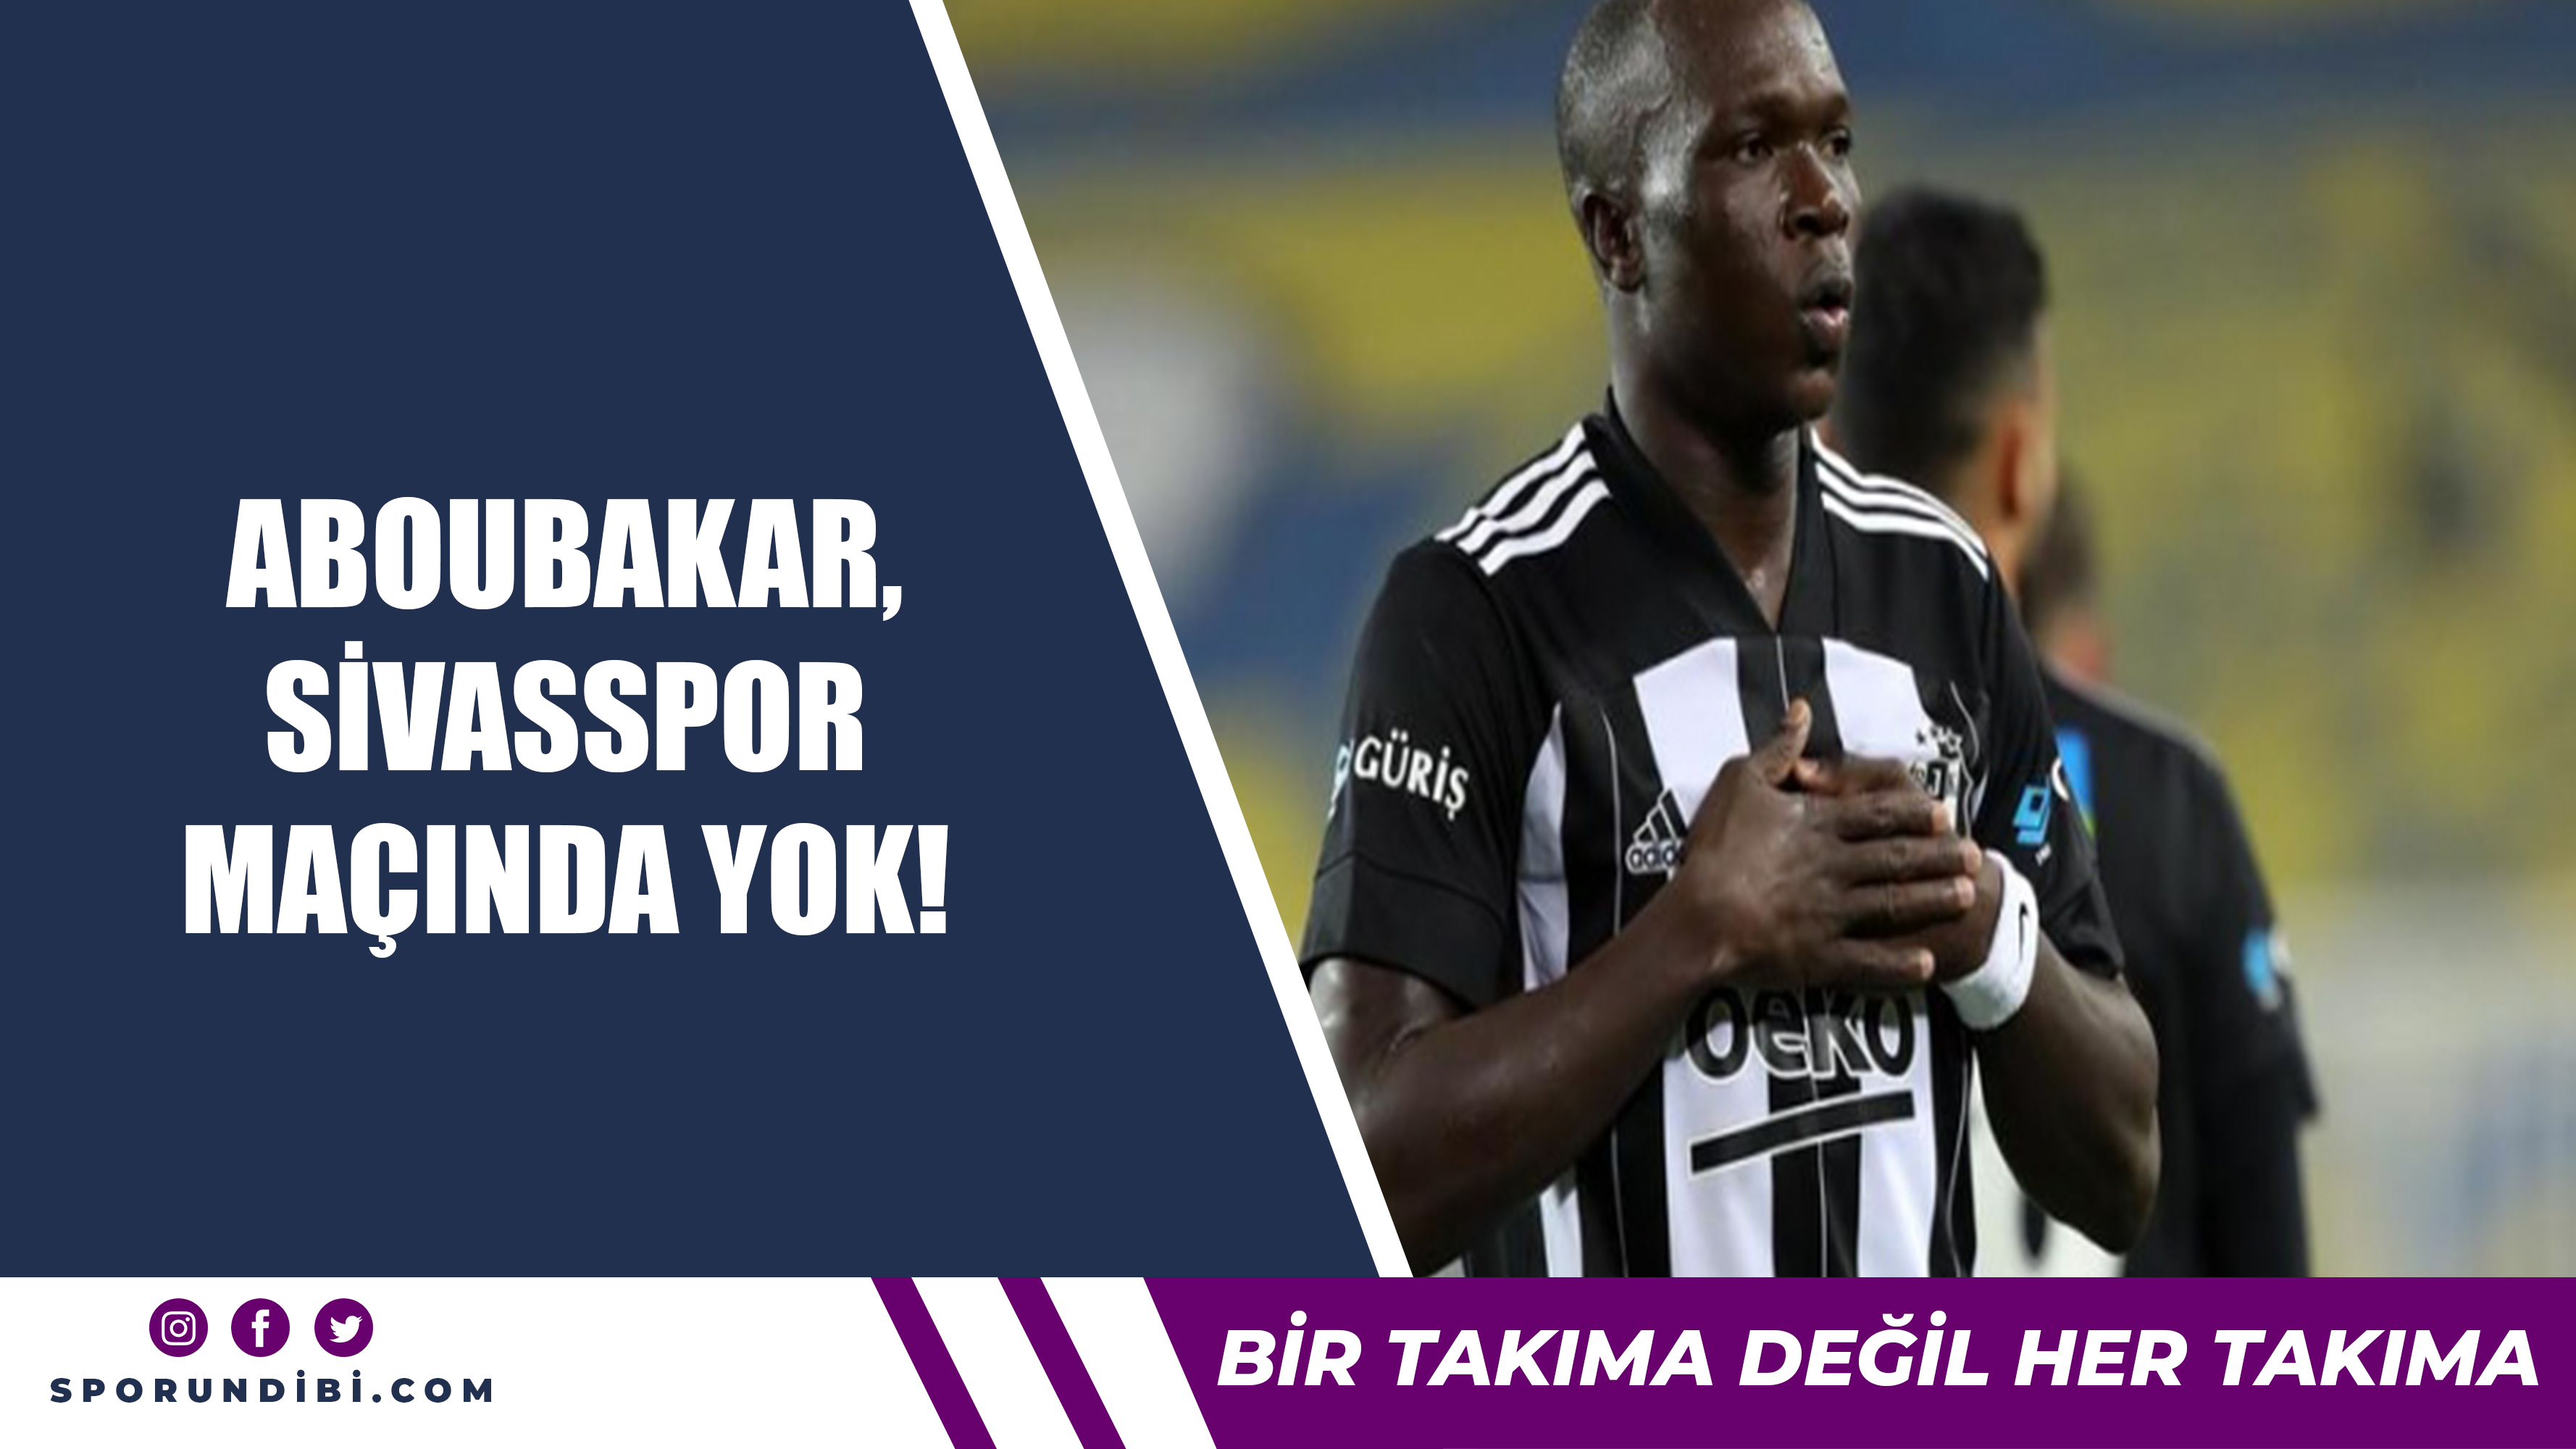 Abouakar, Sivasspor maçında yok!